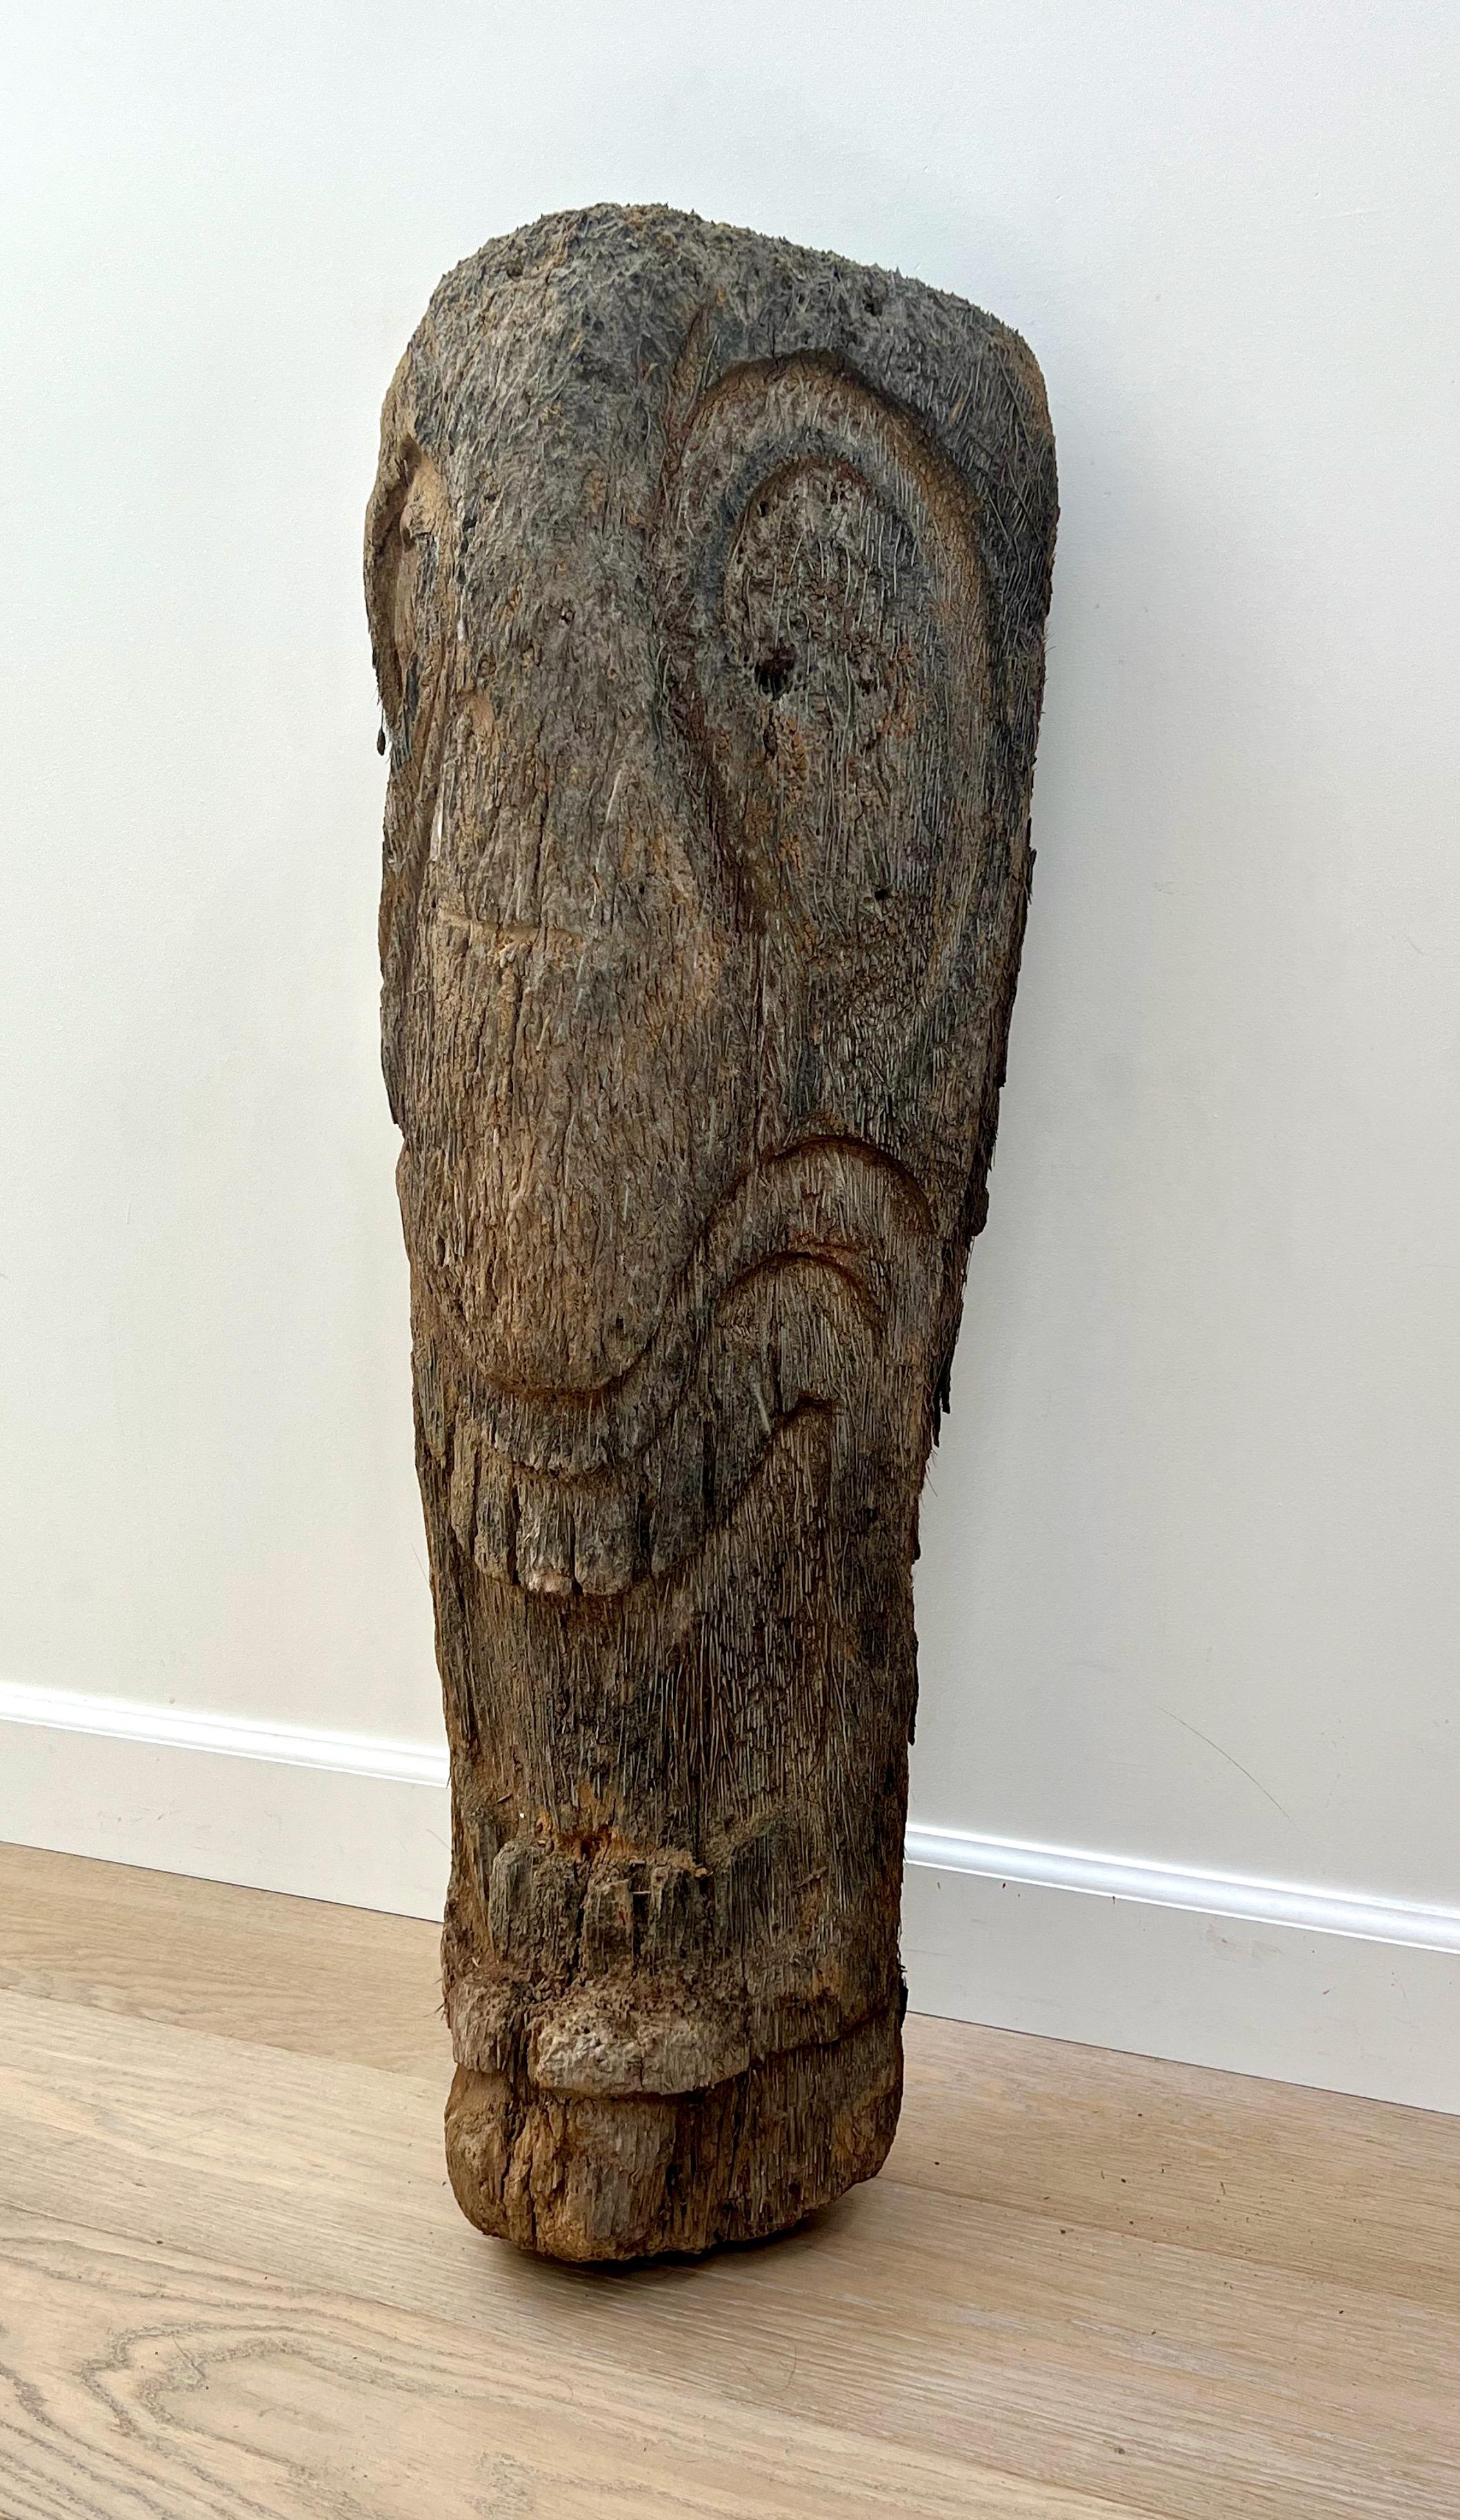 Vintage Tiki-Kopf-Skulptur aus Palmenholz. Ein fesselndes Stück, das zeitlosen tropischen Charme ausstrahlt. Mit seinen Wurzeln in der Tiki-Kultur aus der Mitte des 20. Jahrhunderts ist dieses Stück eine nostalgische Erinnerung an die exotische und